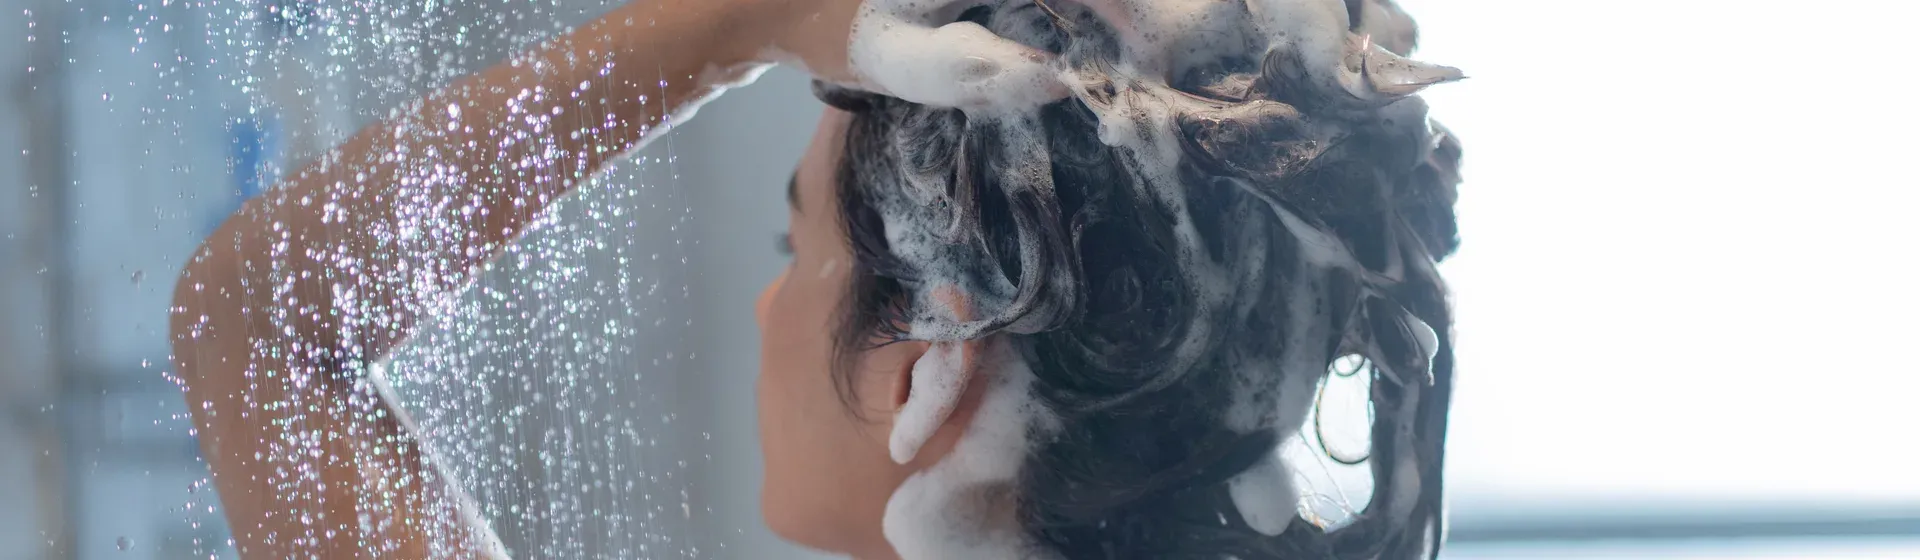 Mulher no banho, aplica shampoo no cabelo já com espuma, com o chuveiro ligado.